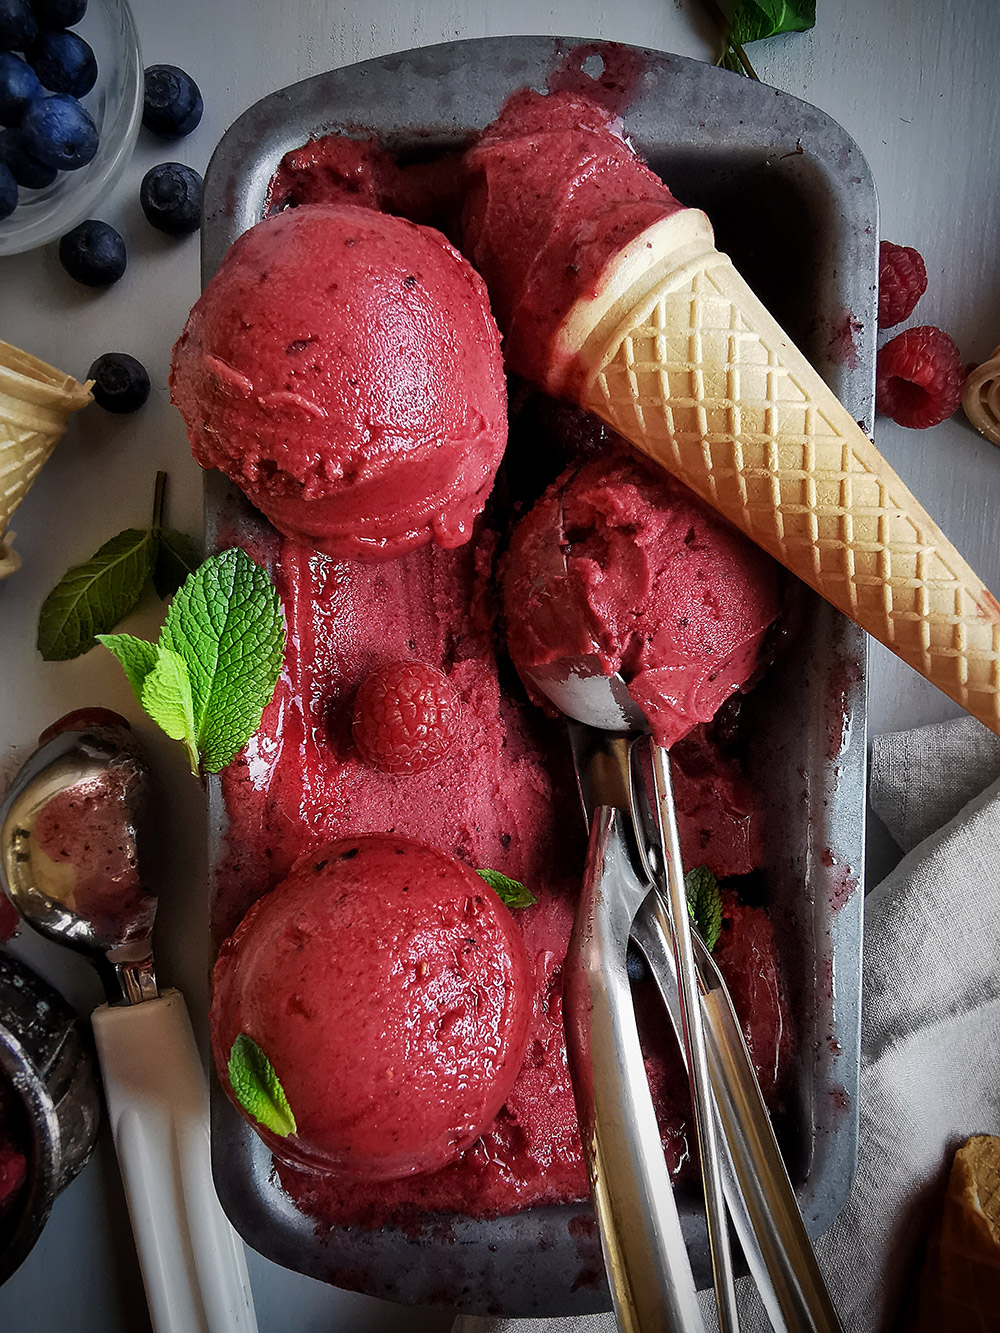 Berry ice cream